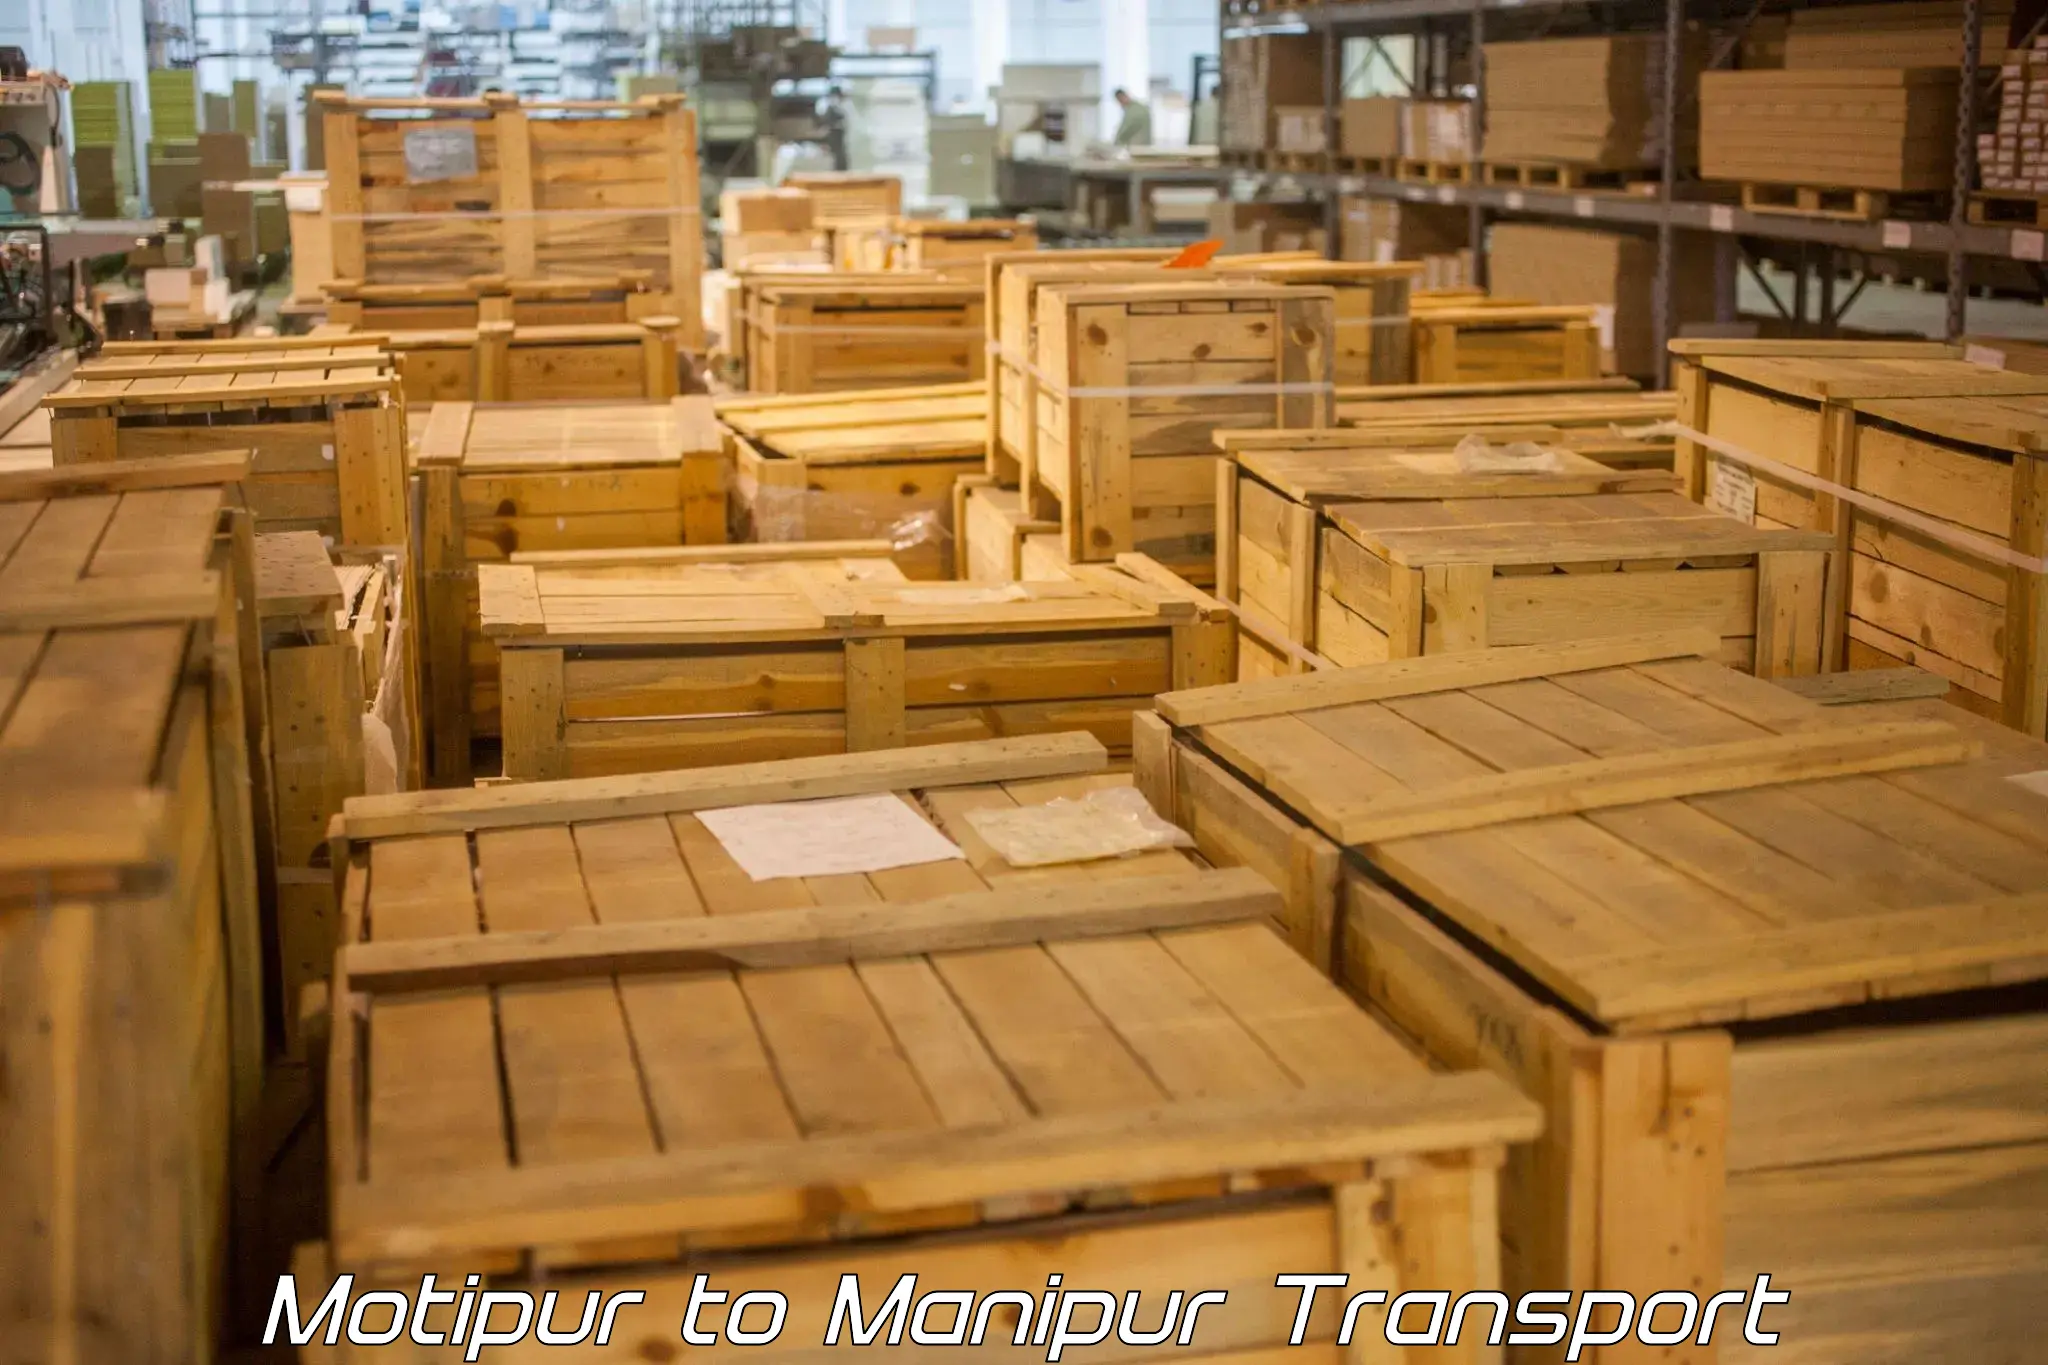 Furniture transport service Motipur to Chandel